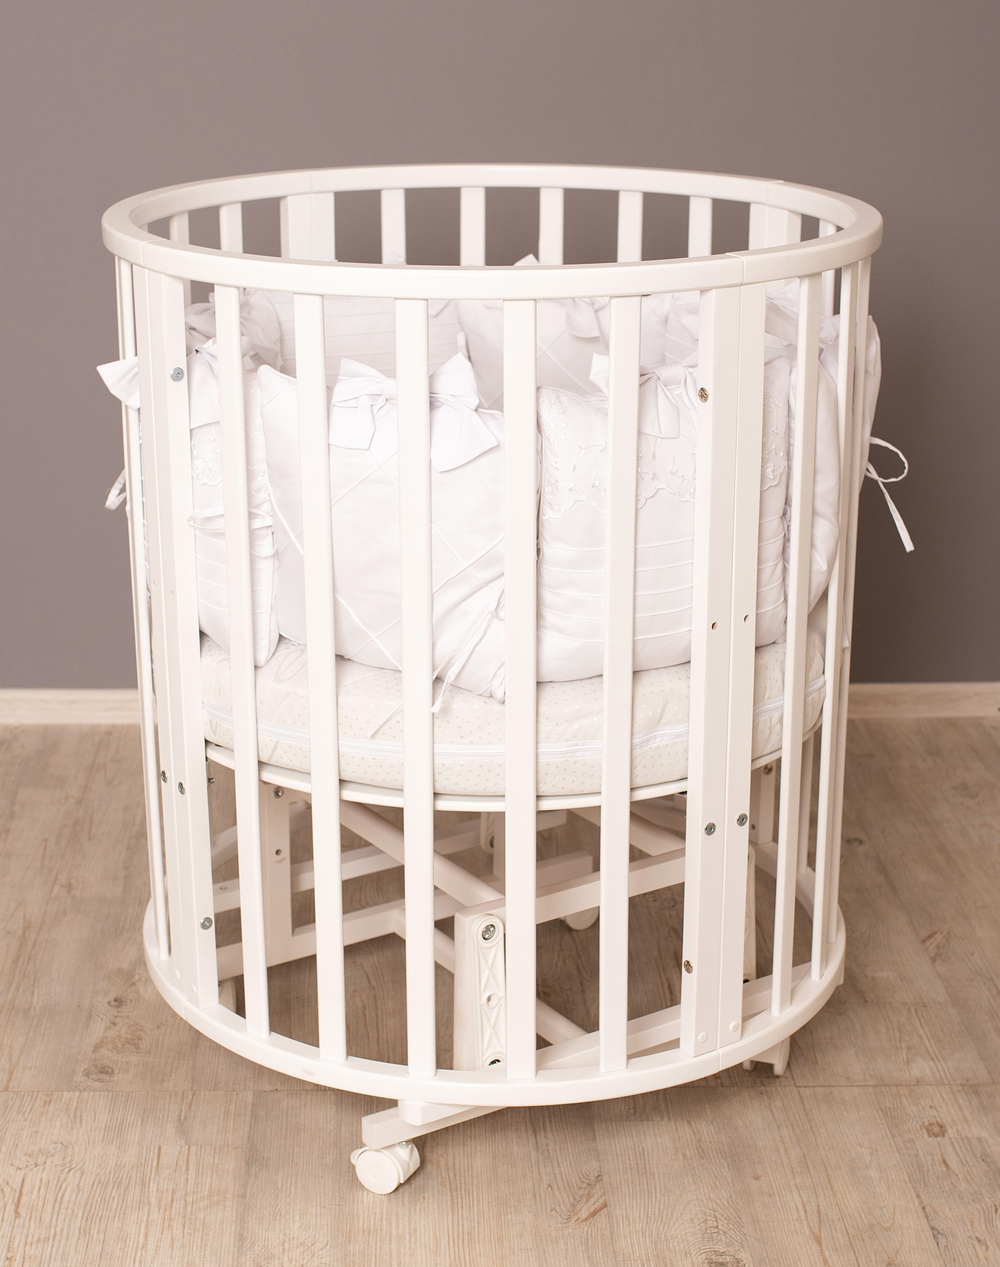 Детская кроватка для новорожденных трансформер северная звезда 9 в 1 с маятником детская кровать